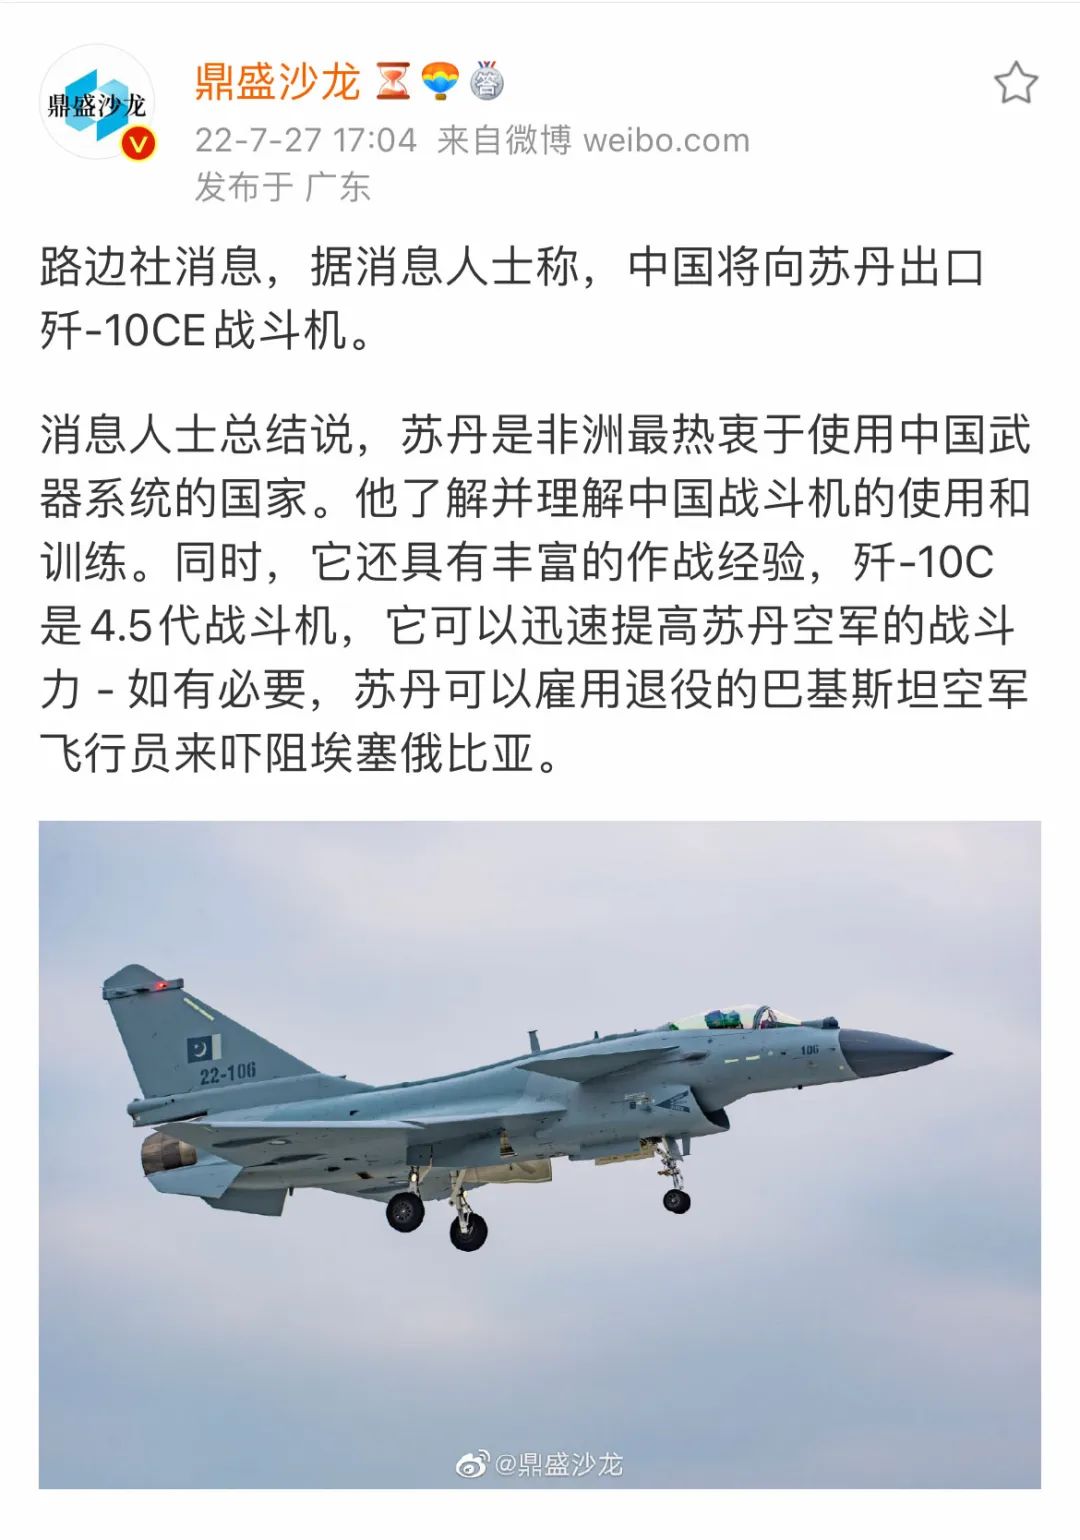 又来大单？苏丹将成为歼-10CE第2个客户，中国战机出口未来可期